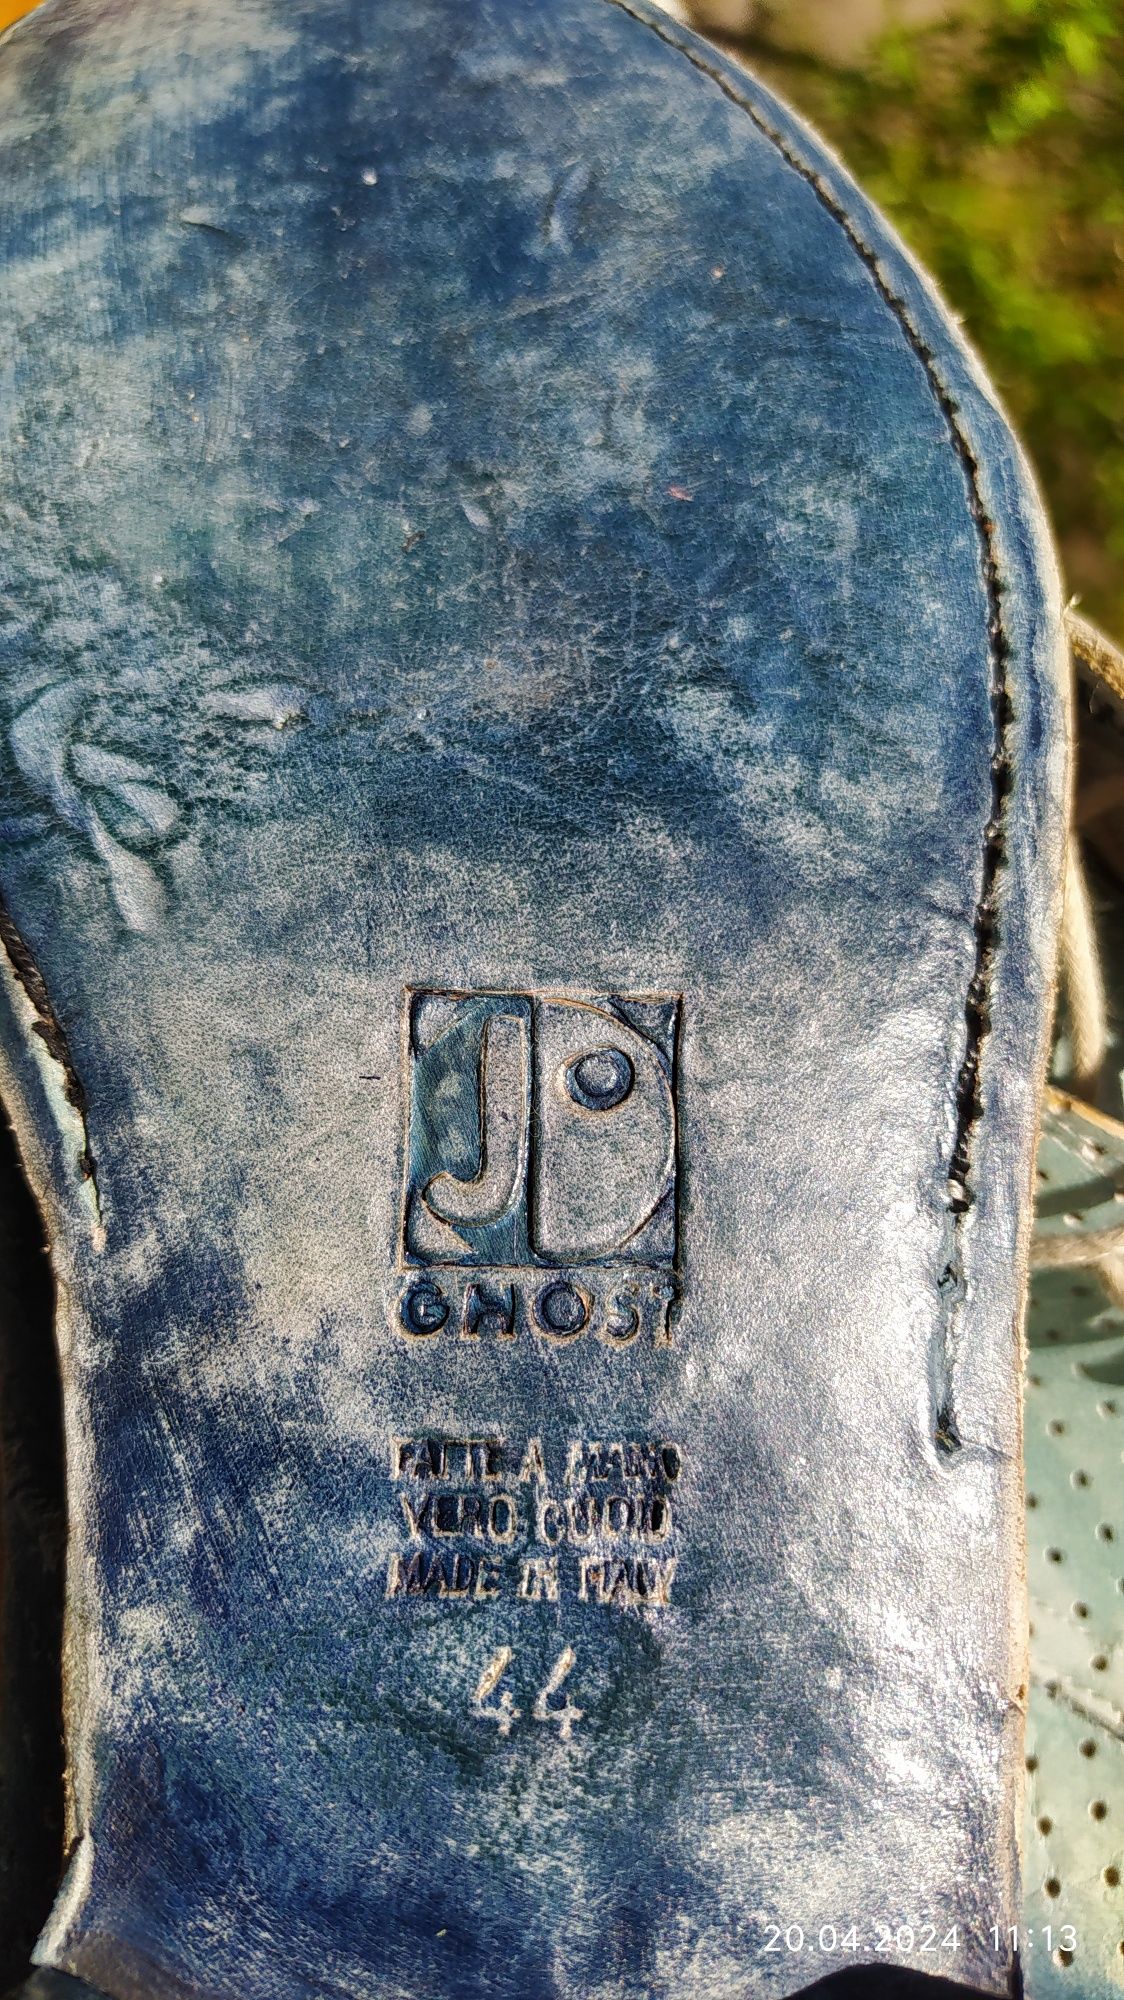 Туфлі. Шкіряні, перфоровані, літні туфлі виготовлені фірмою JD Ghost